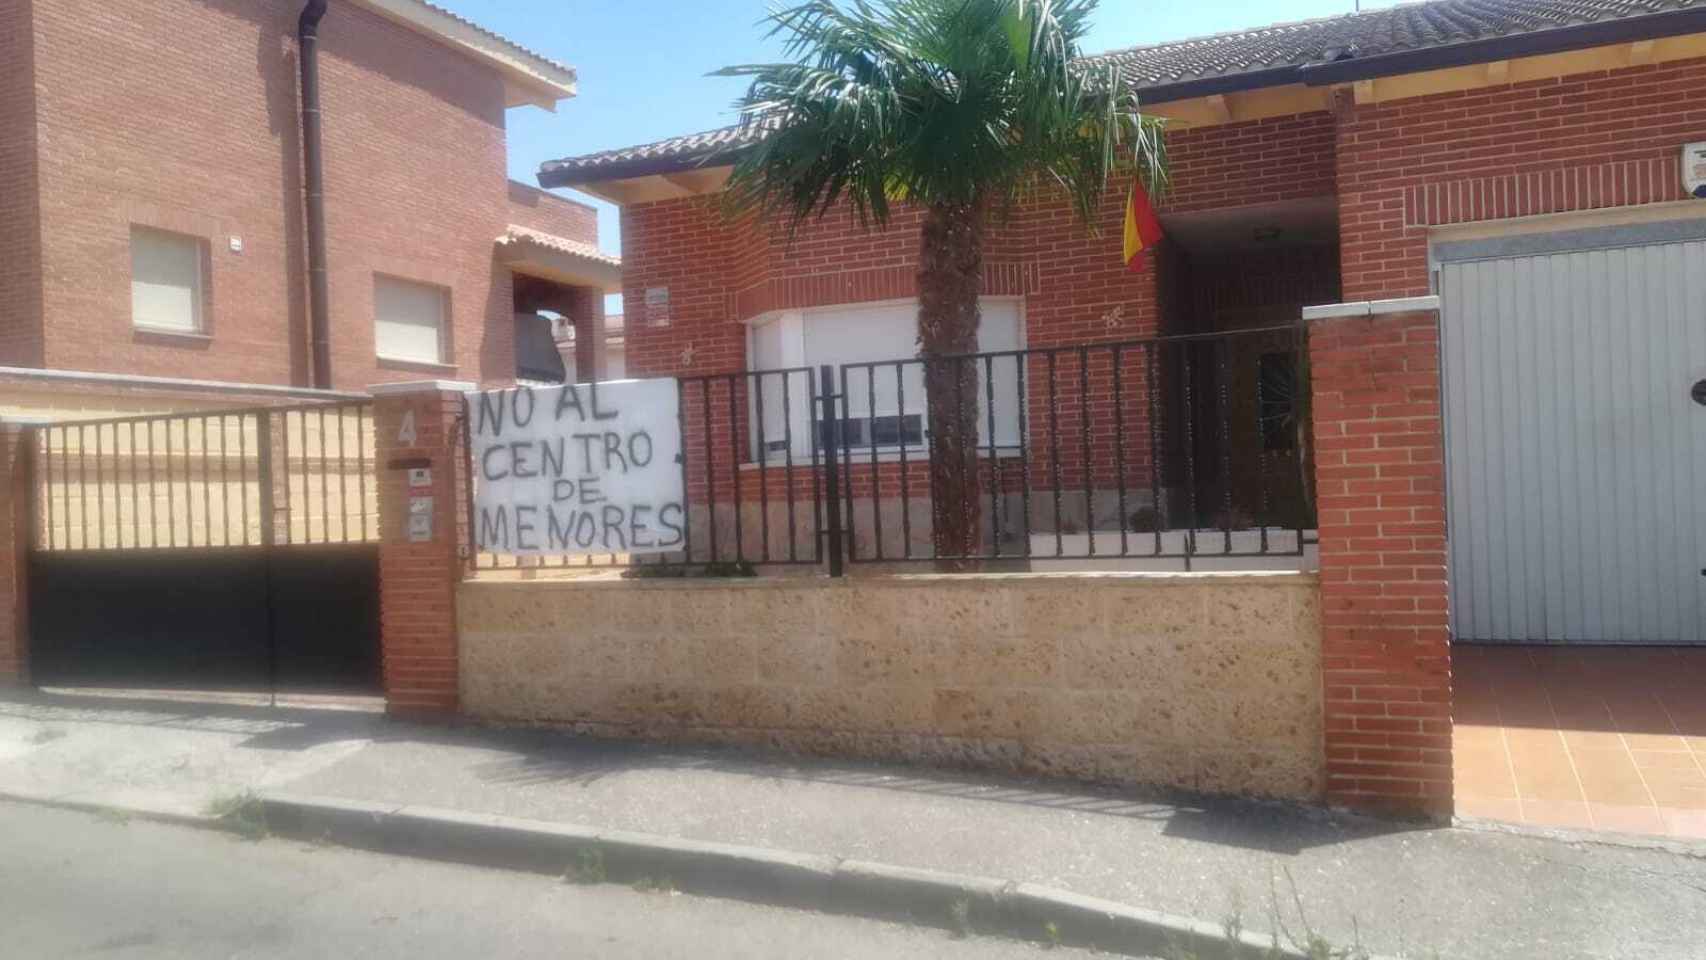 De esta casa cuelga un cartel contra el traslado del centro de menores a Villanueva de la Torre.